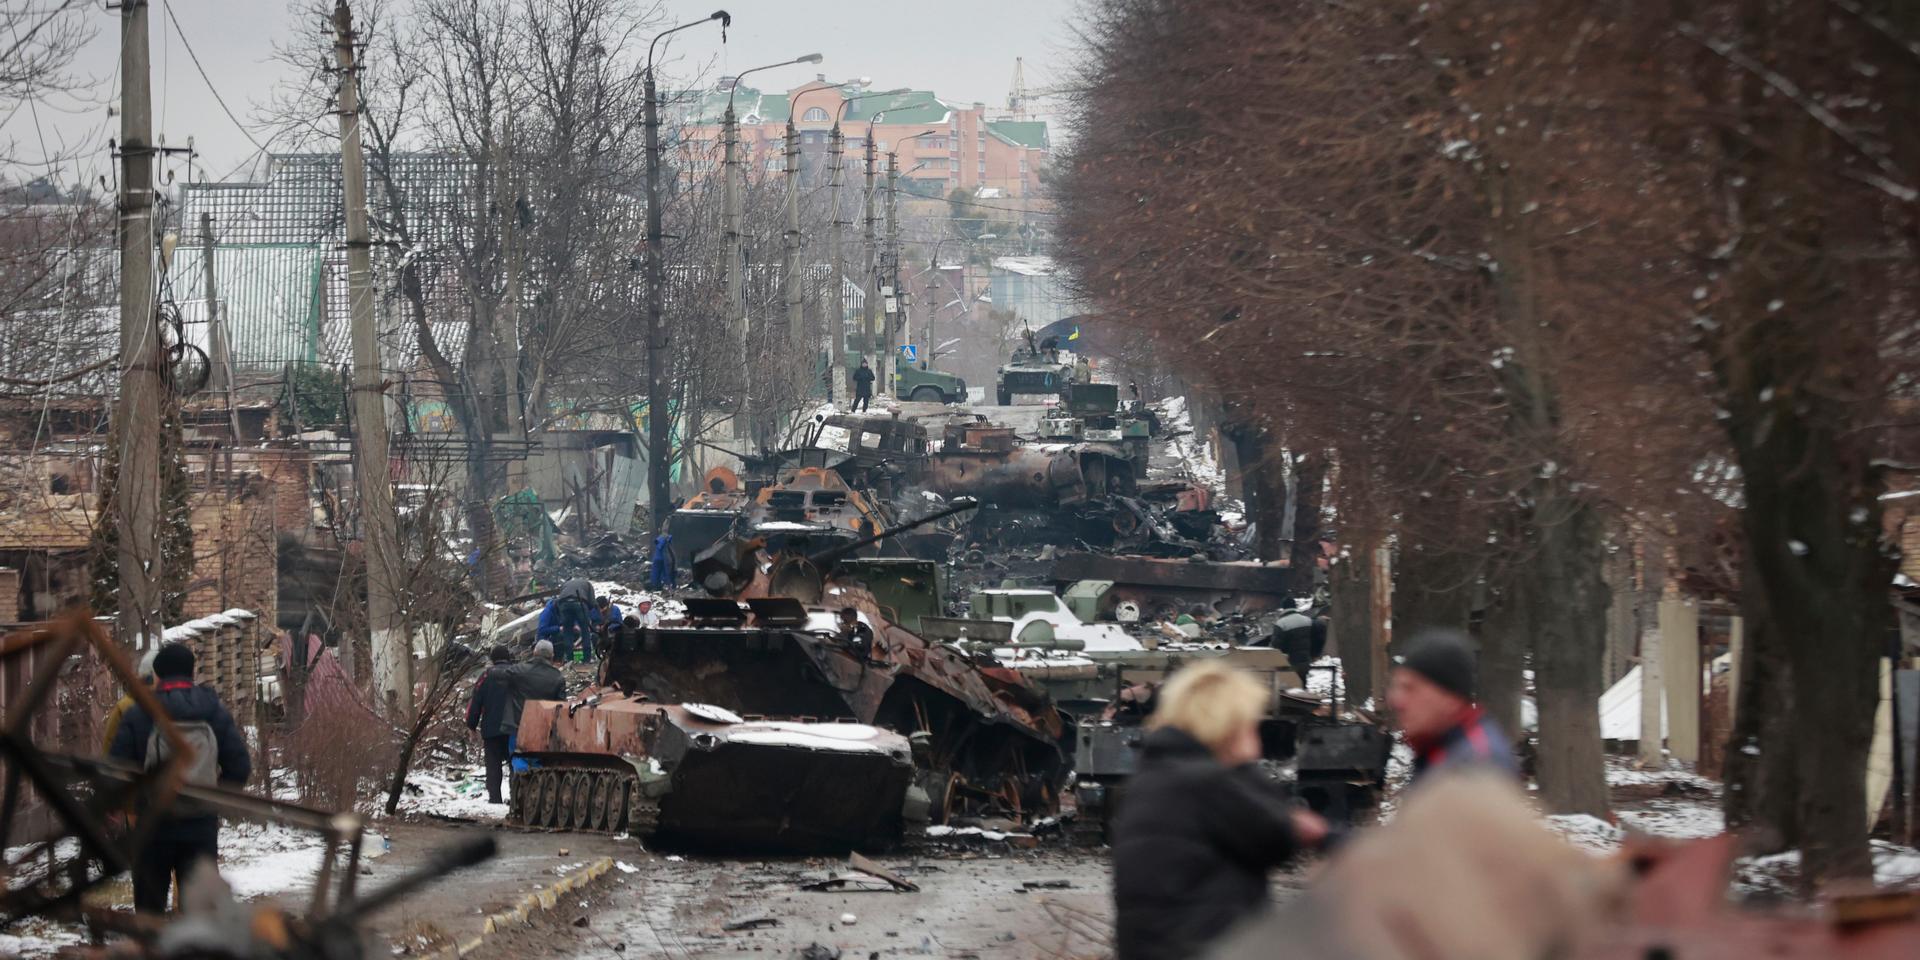 Människor tittar på förödelsen av ryska militära fordon på en väg i Butja utanför Kiev, i en bild från i tisdags.